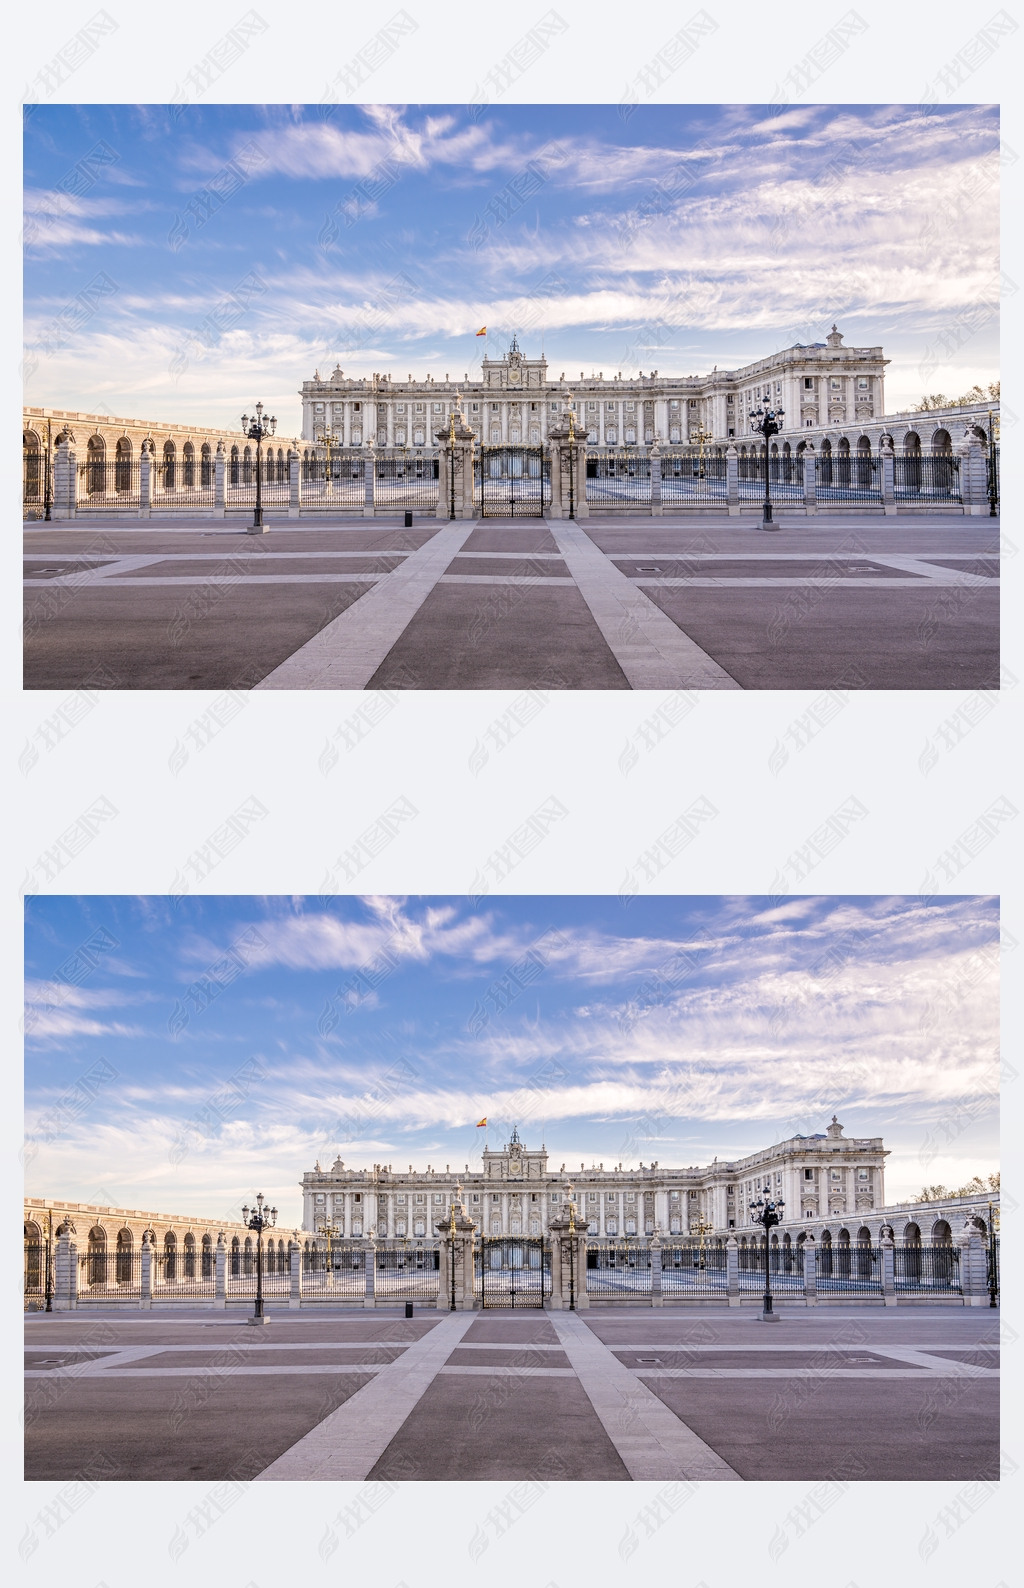 View at the Royal Palace of Madrid